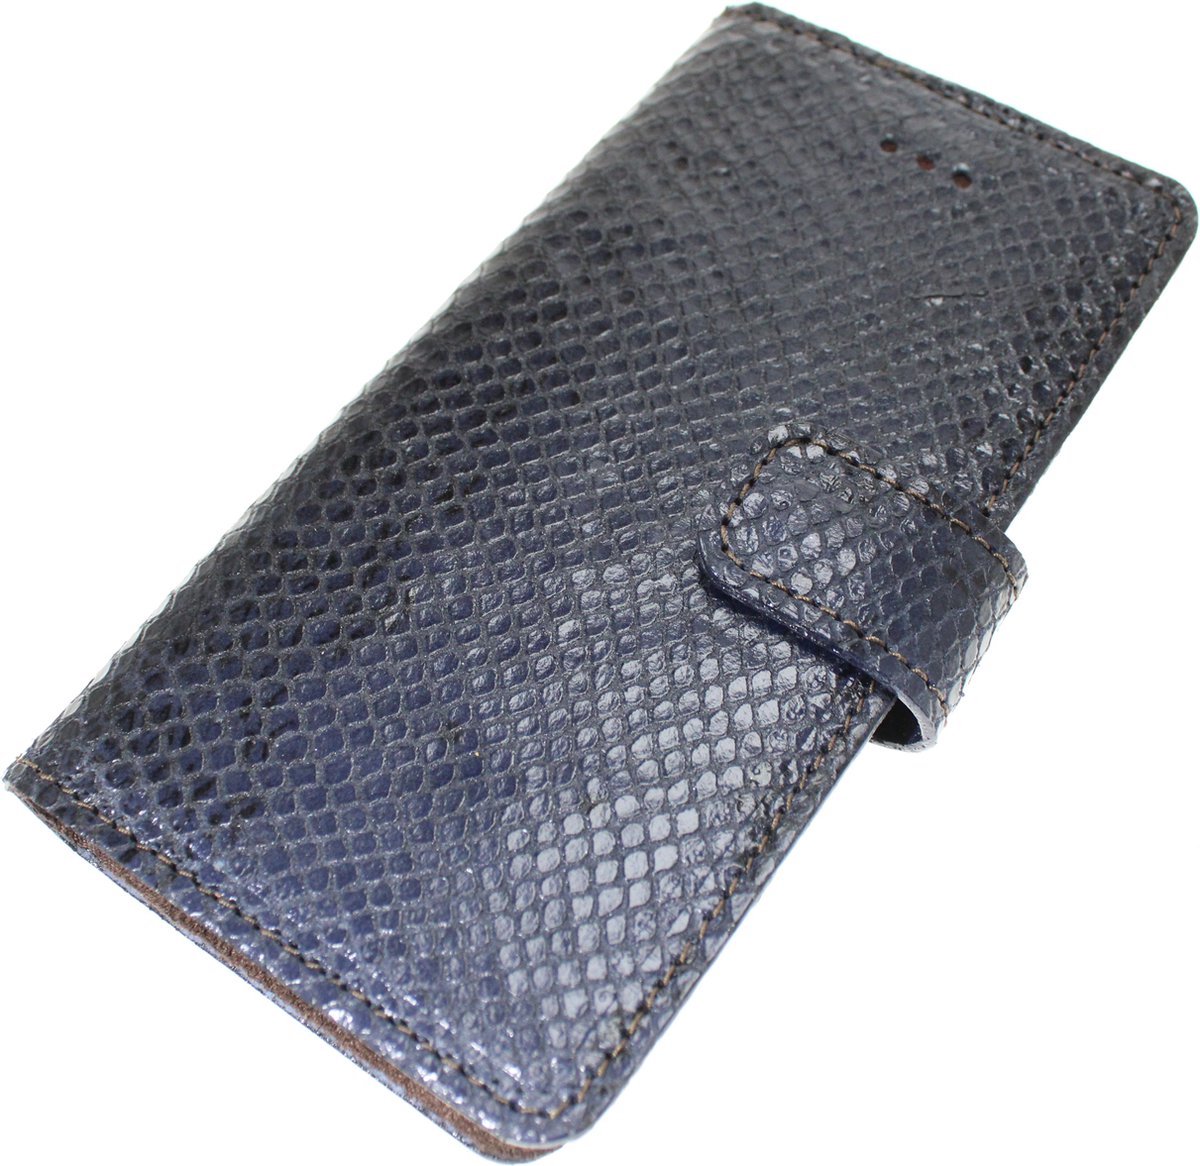 Made-NL Handgemaakte ( Apple iPhone 12 ) book case Zwart/blauw slangenprint reliëf kalfsleer